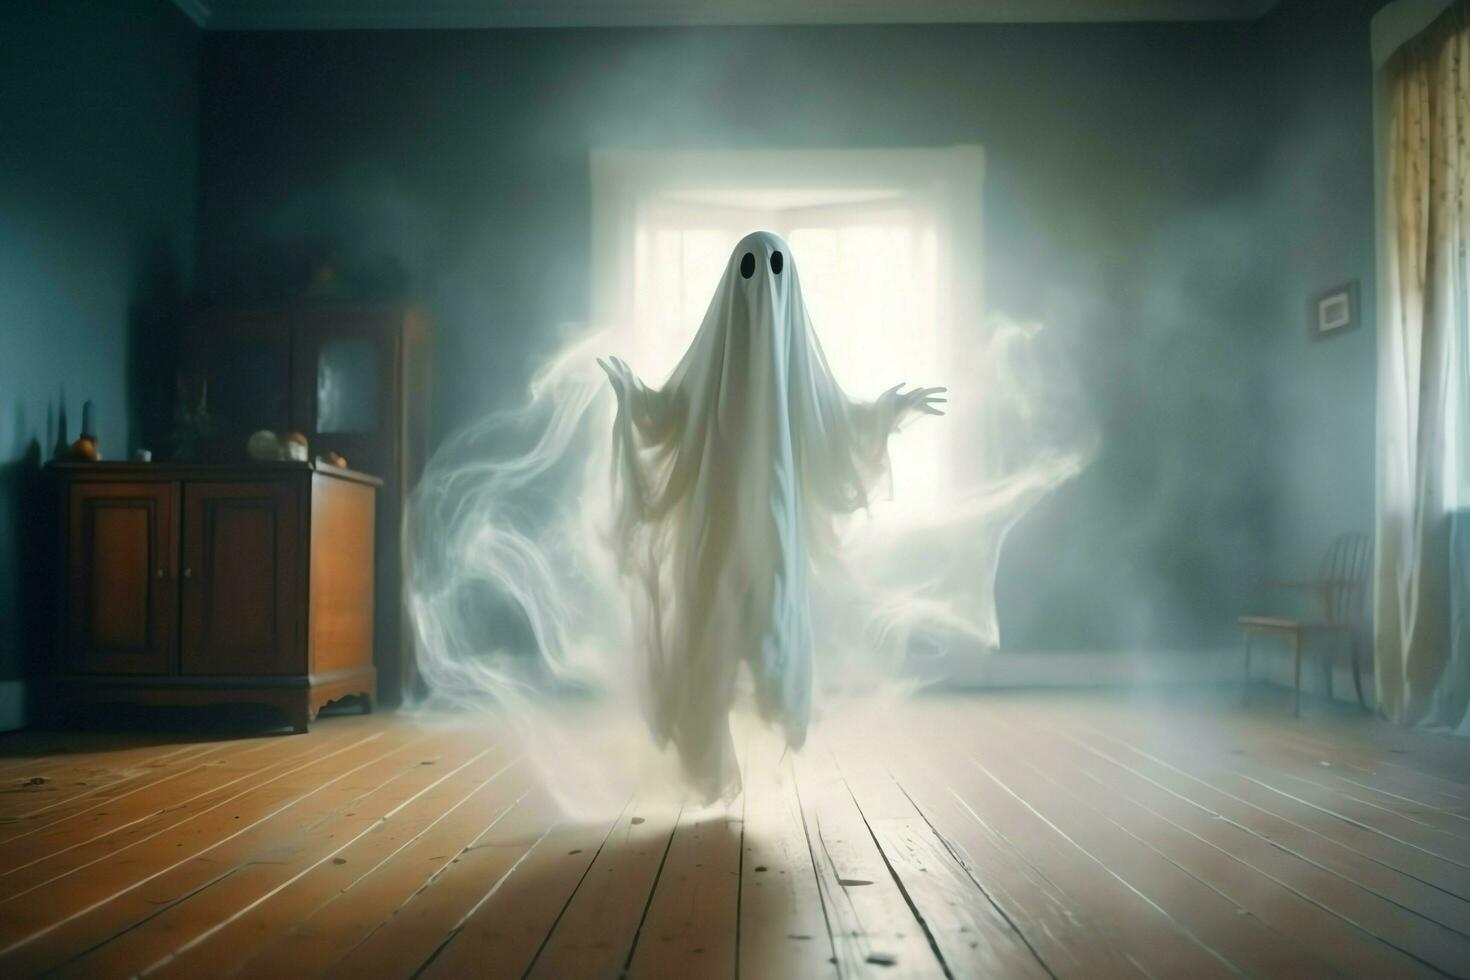 umano nel spaventoso fantasmi costume volante dentro il vecchio Casa a notte. spaventoso Halloween sfondo con fantasma. fantasma su Halloween celebrazione concetto di ai generato foto